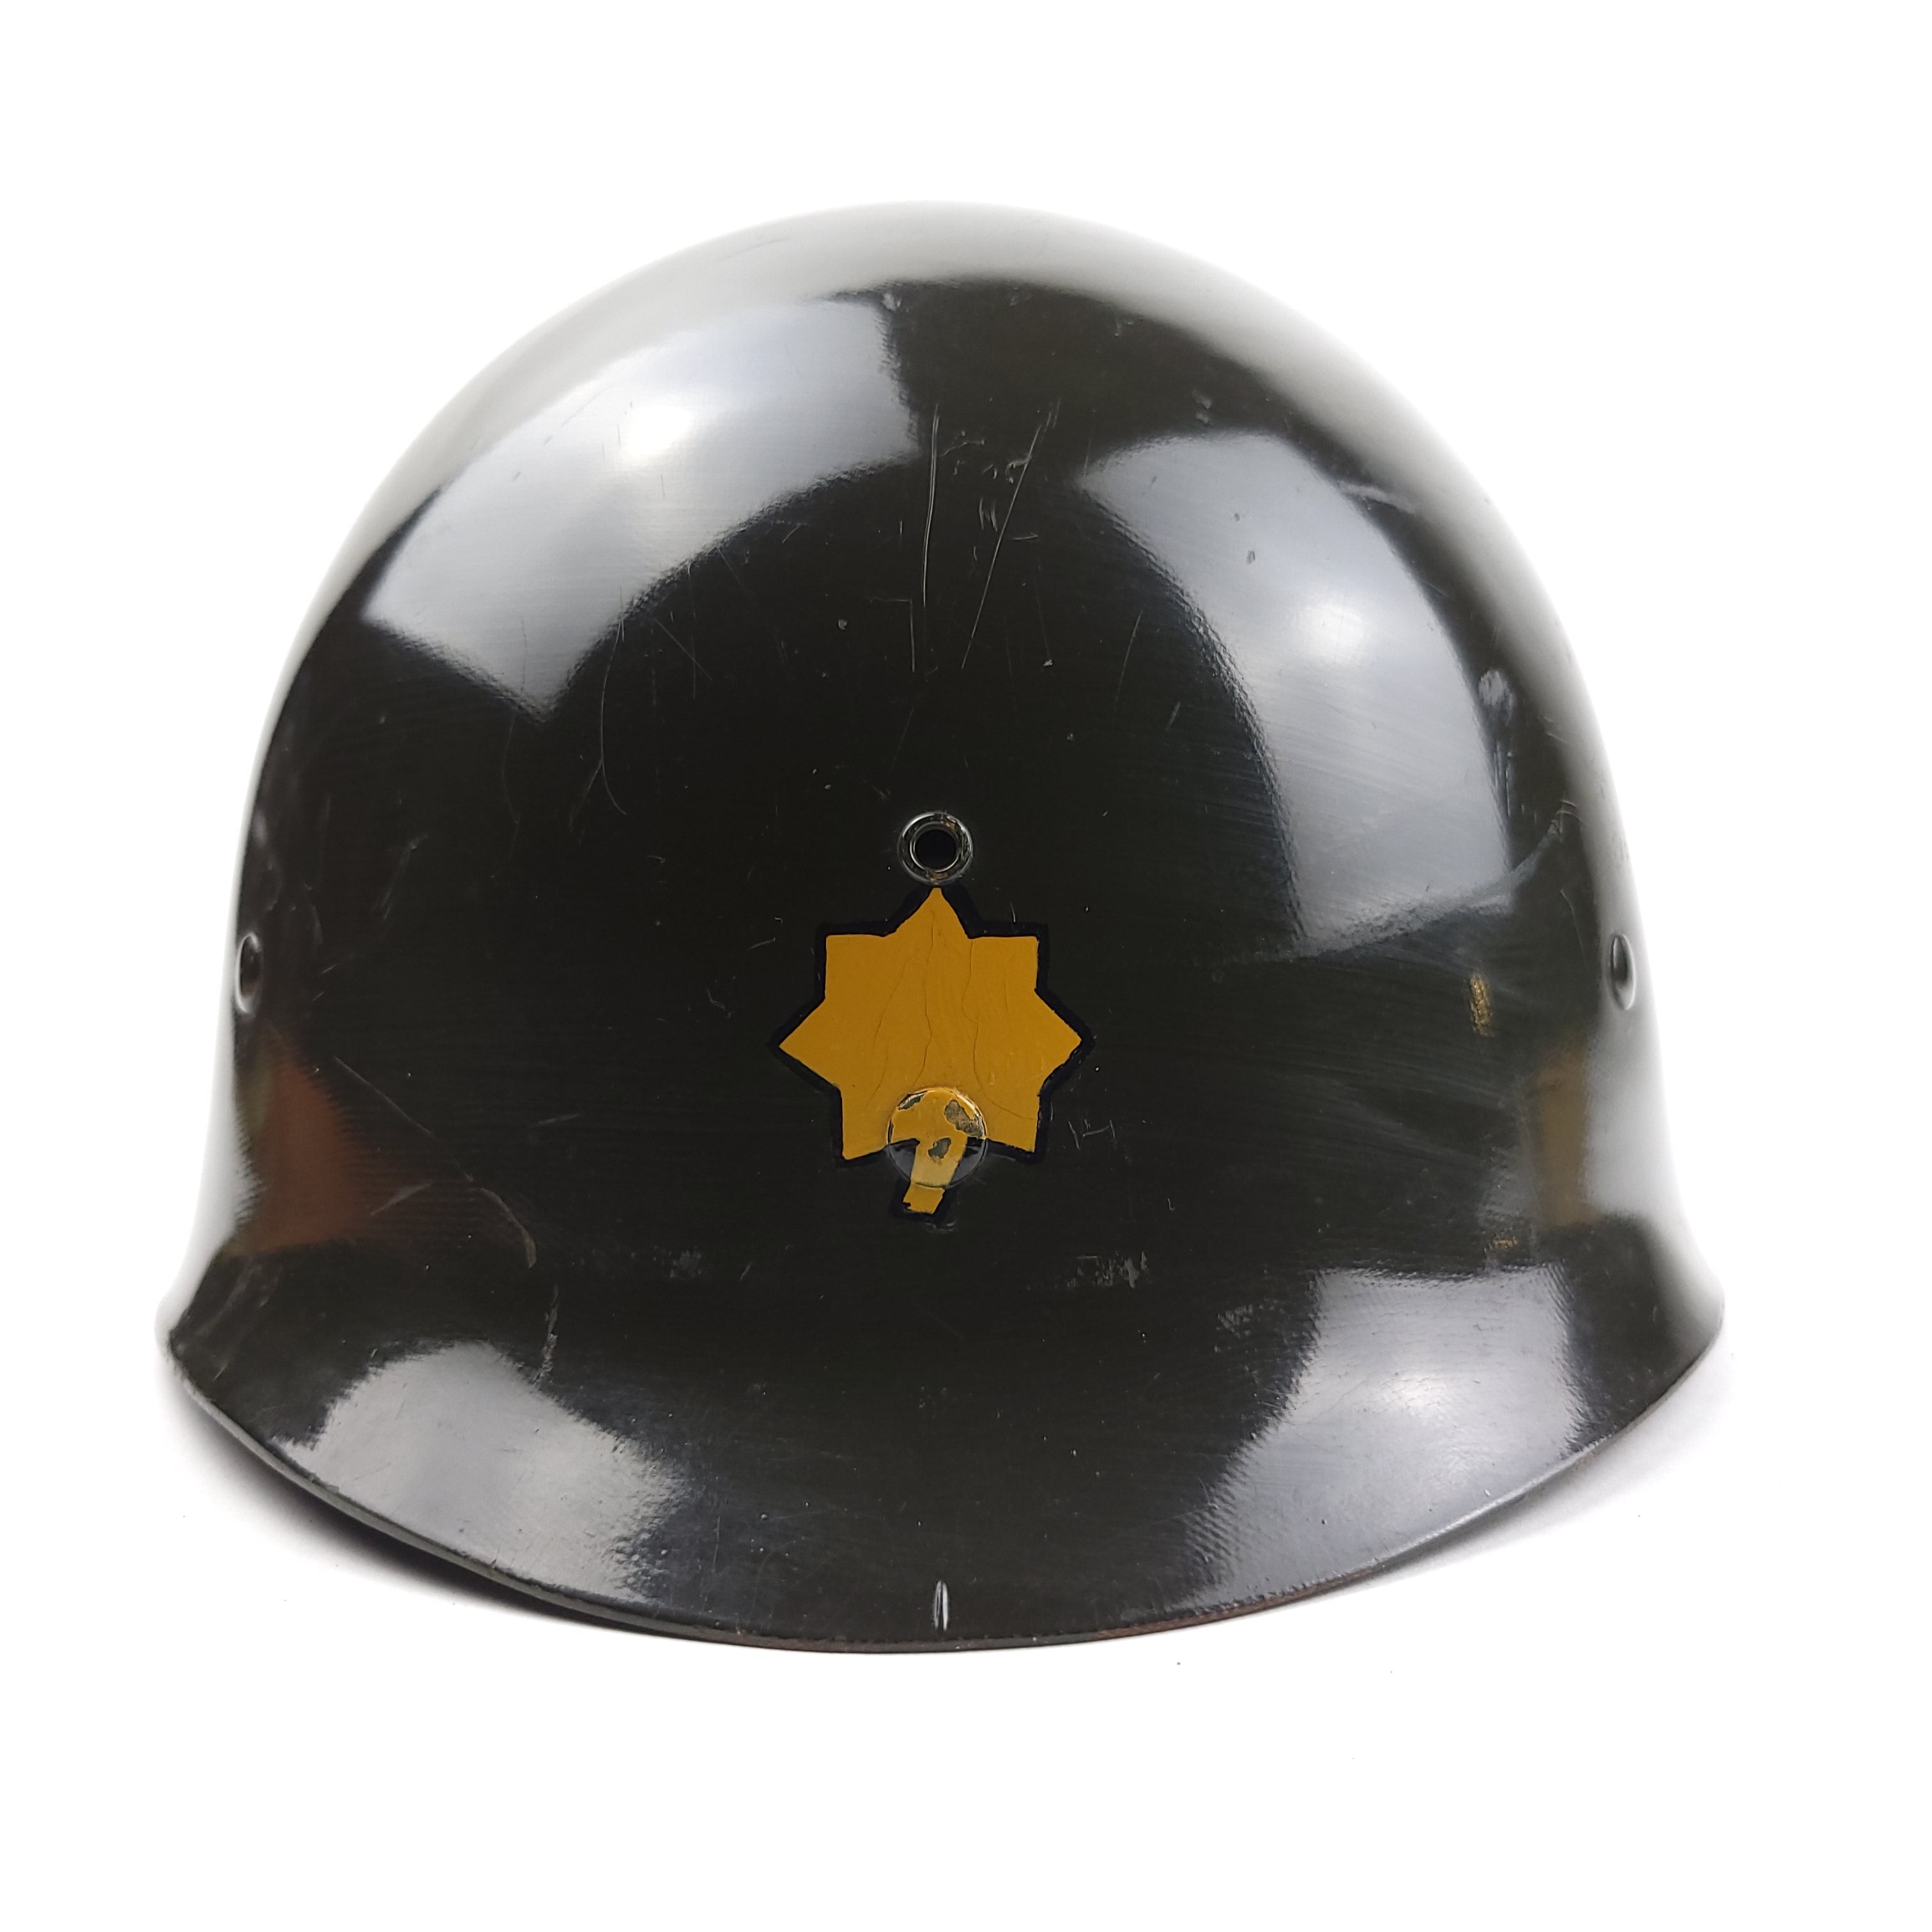 M1 Helmet Liner - Inland - Pacific Command Major Rank - Original